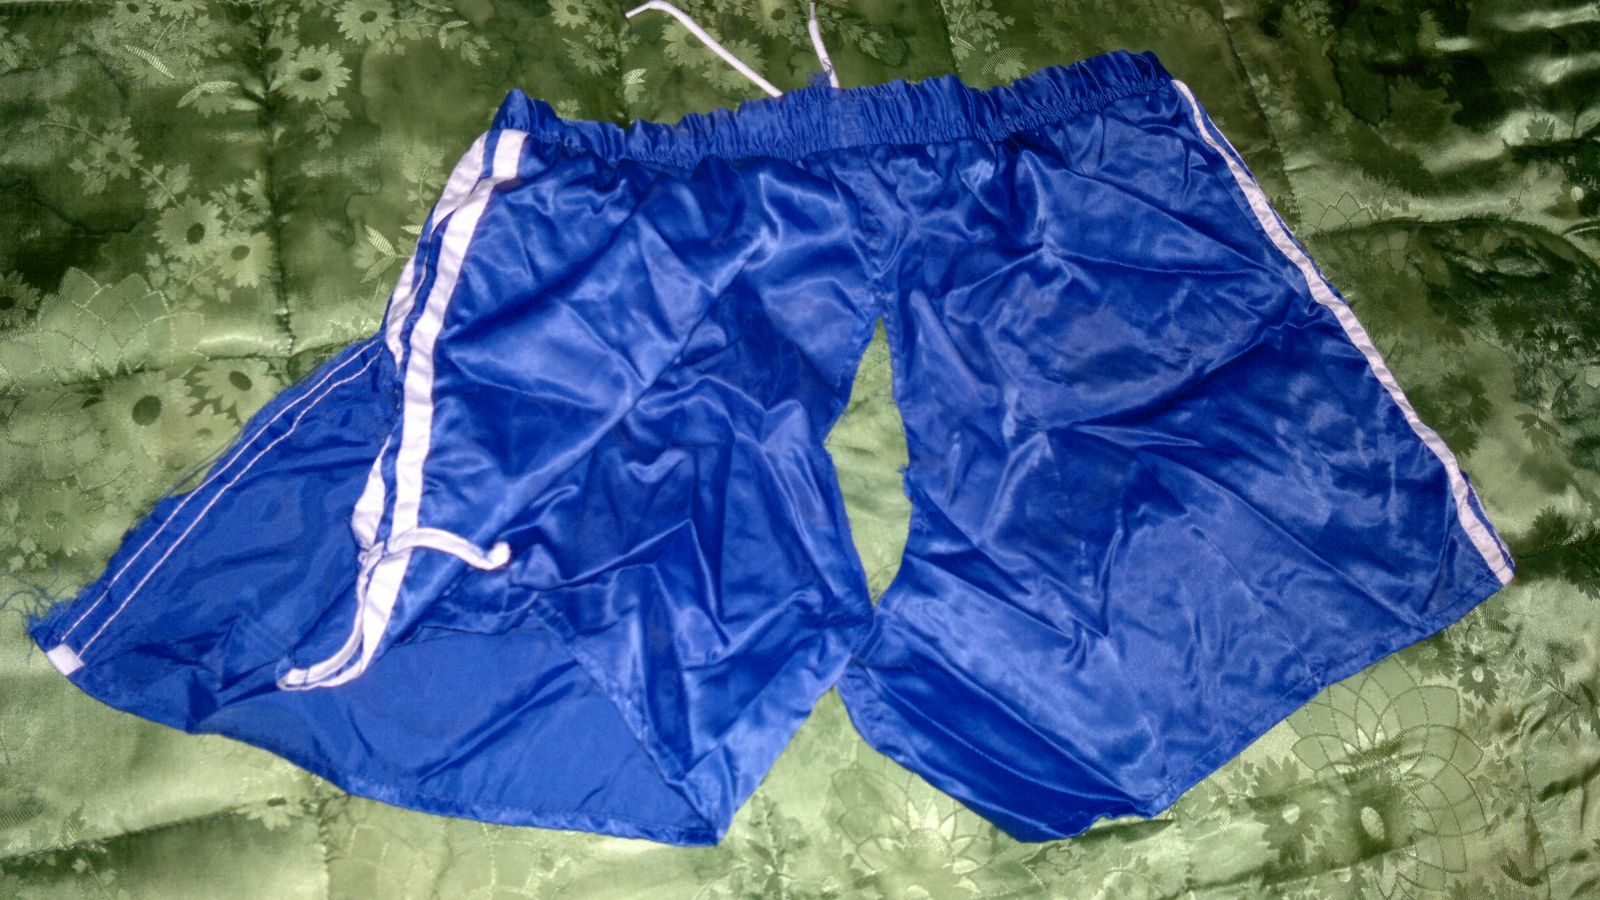 Blaue Adidas shorts Satin Von Mir Behandlung Teil1 RIPPING 5